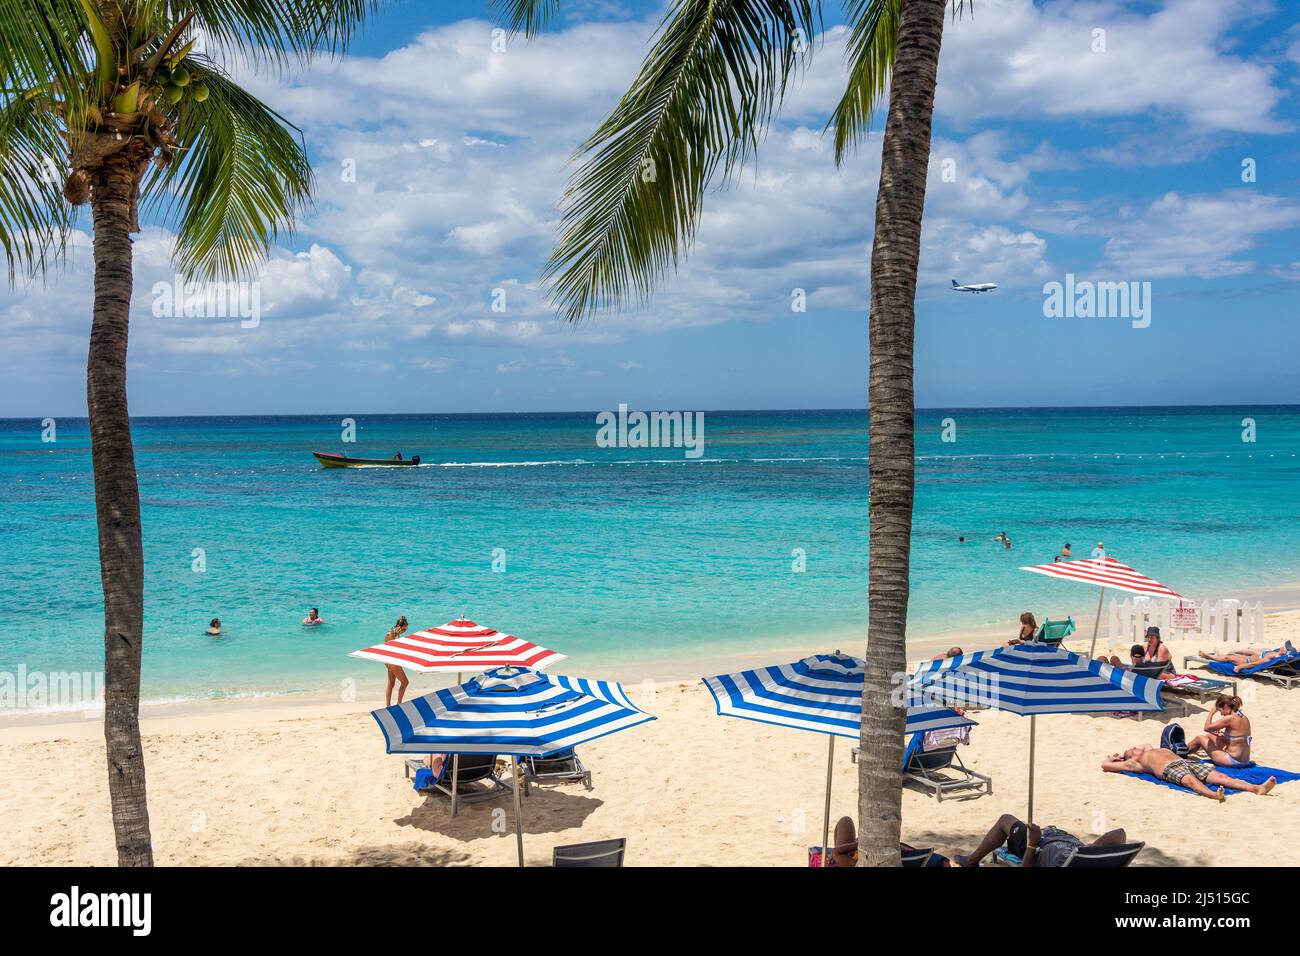 Doctor's Cave Beach, Montego Bay, paroisse St James, Jamaïque, grandes Antilles, Caraïbes Banque D'Images